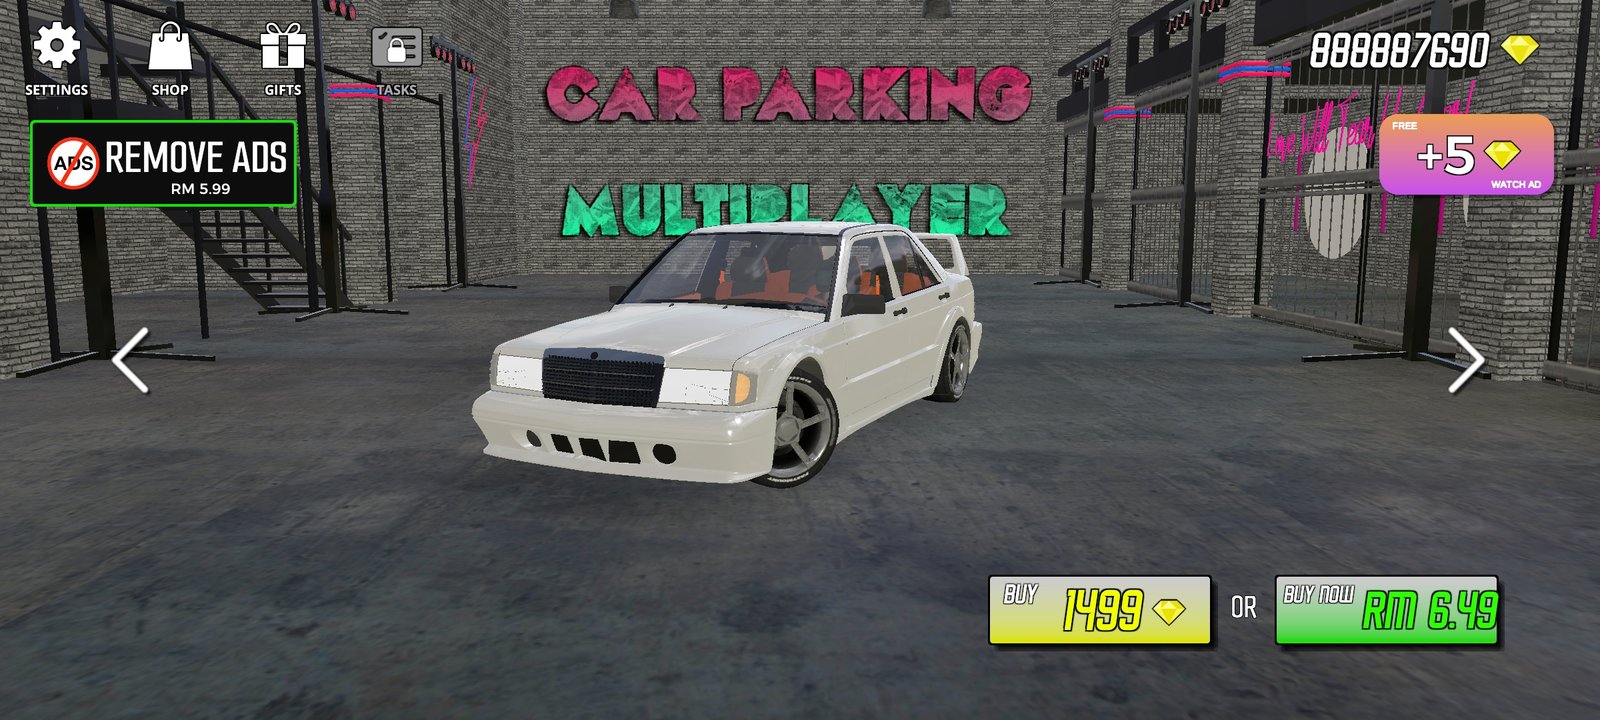 Car Parking Multiplayer Mod APK v4.8.14.8 (Unlimited Money)